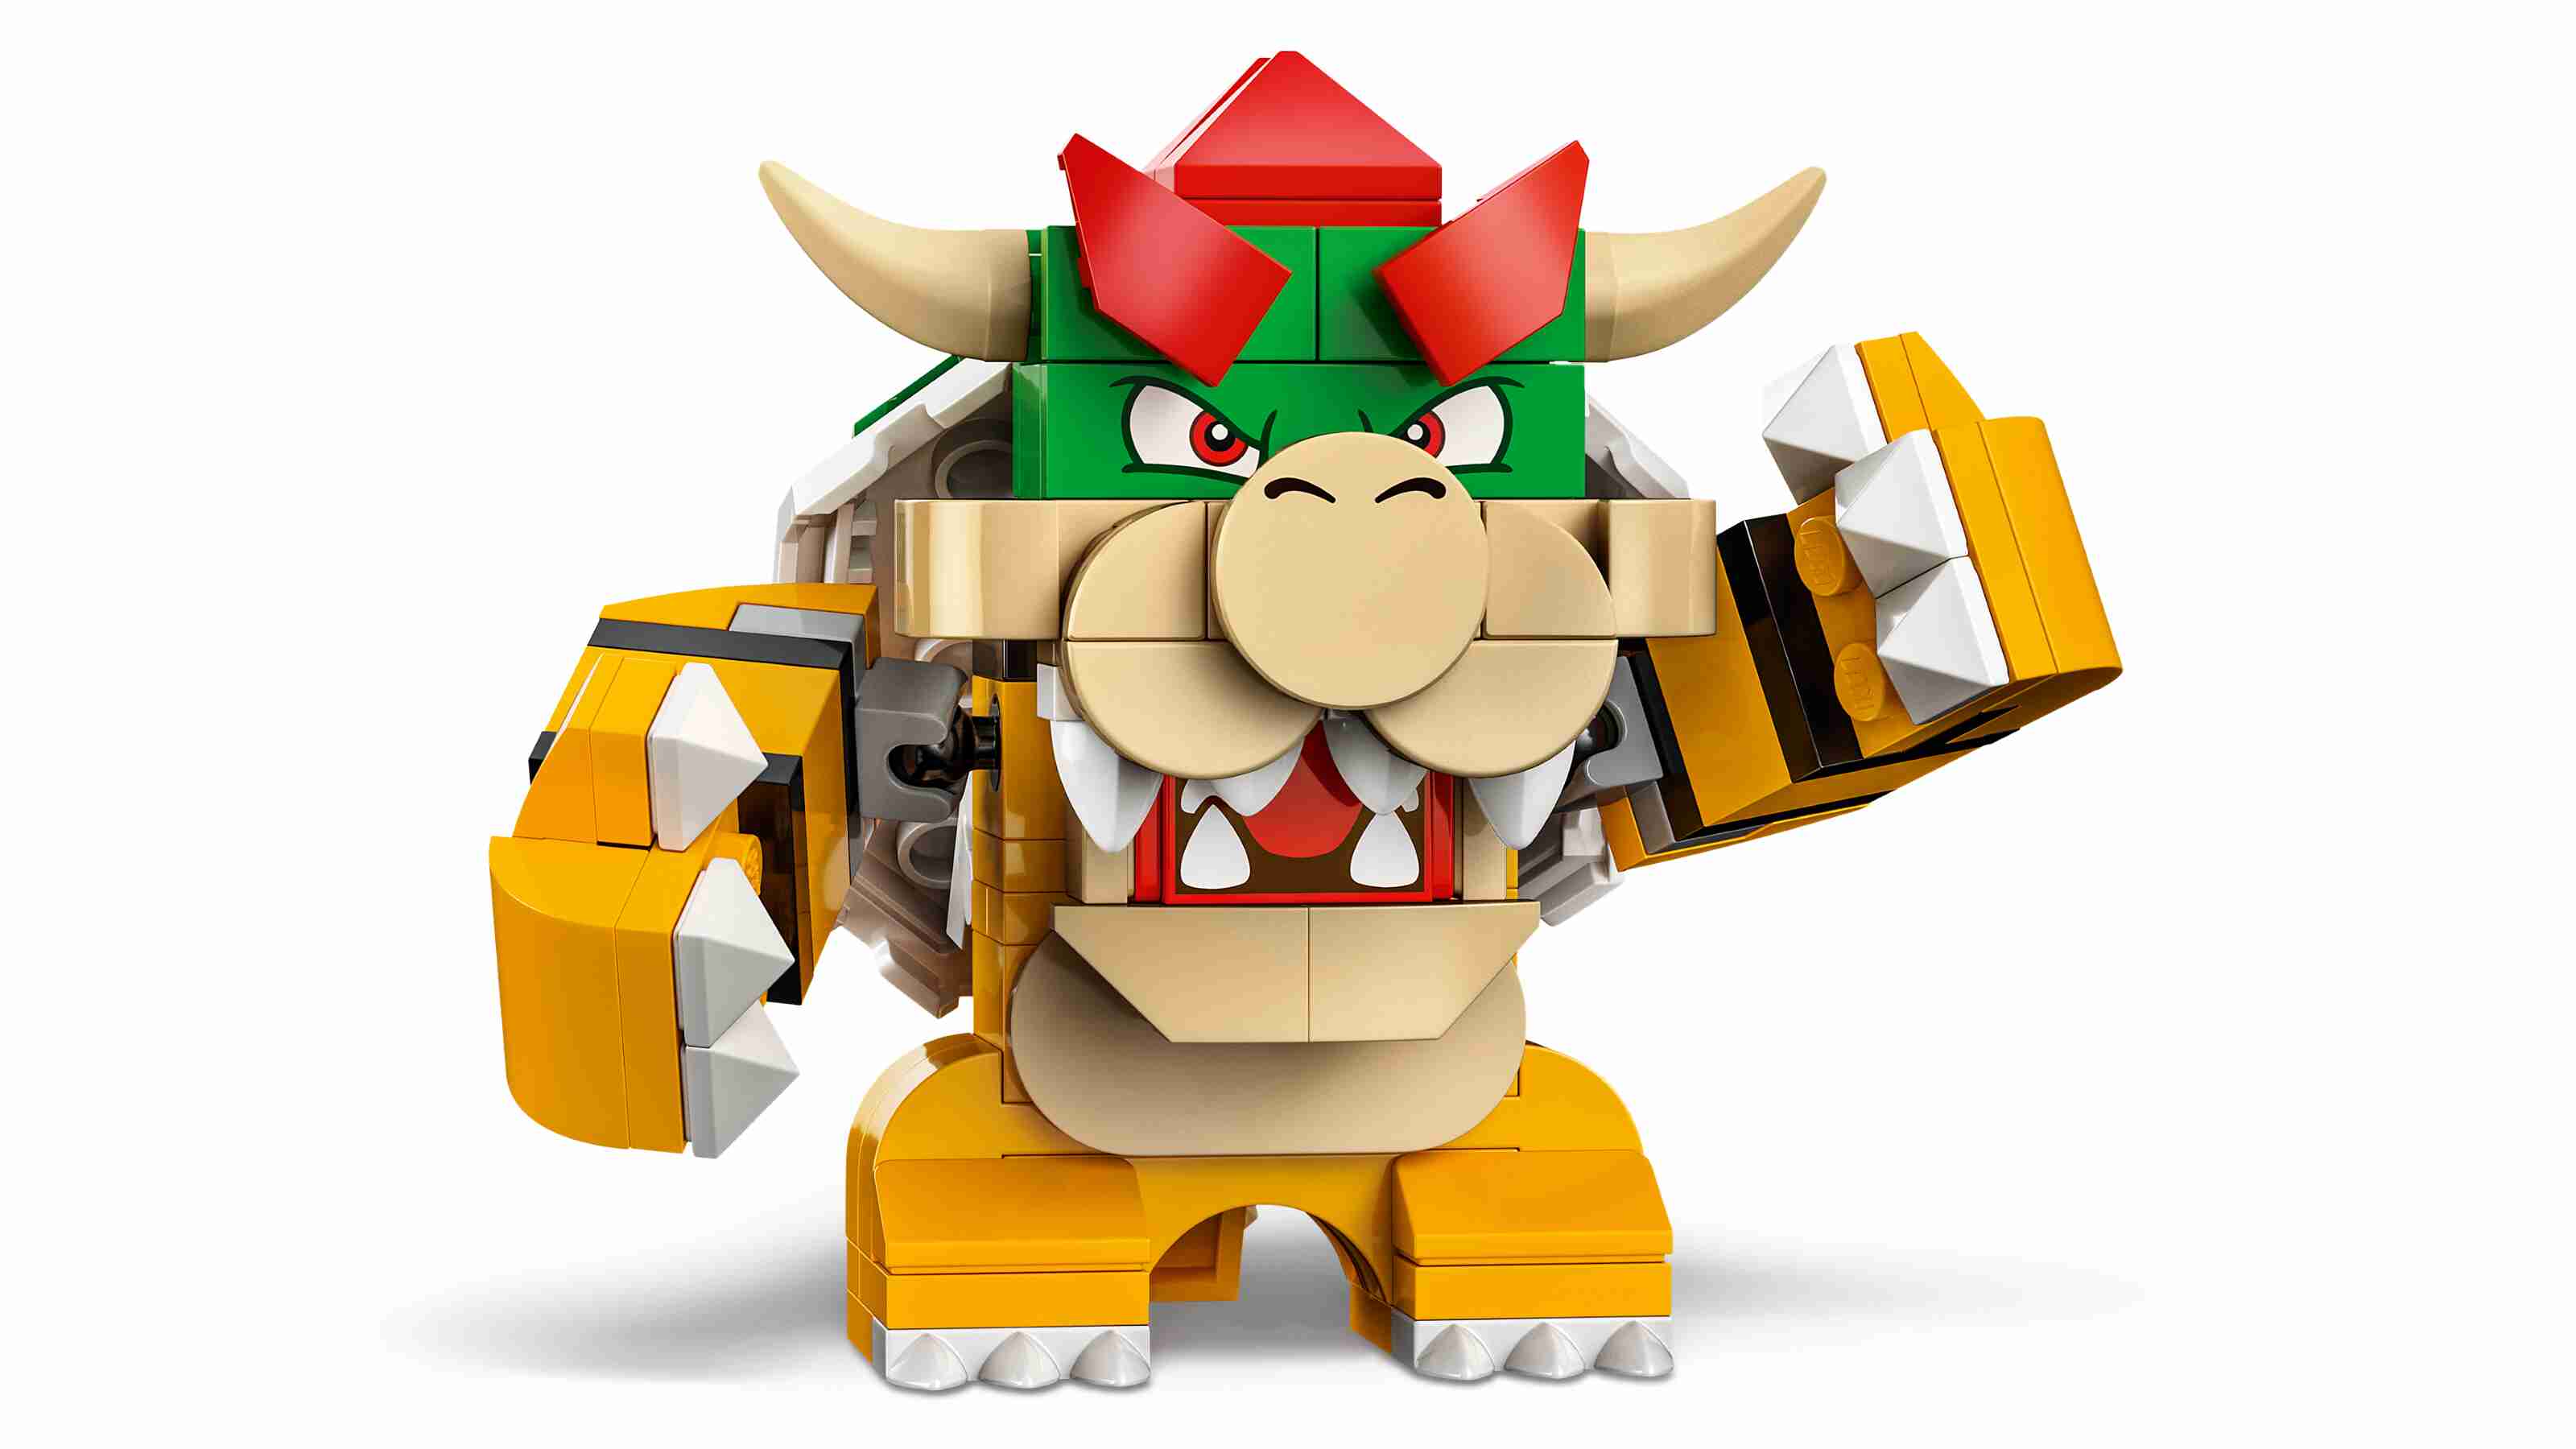 LEGO 71431 Super Mario Bowsers Monsterkarre – Erweiterungsset